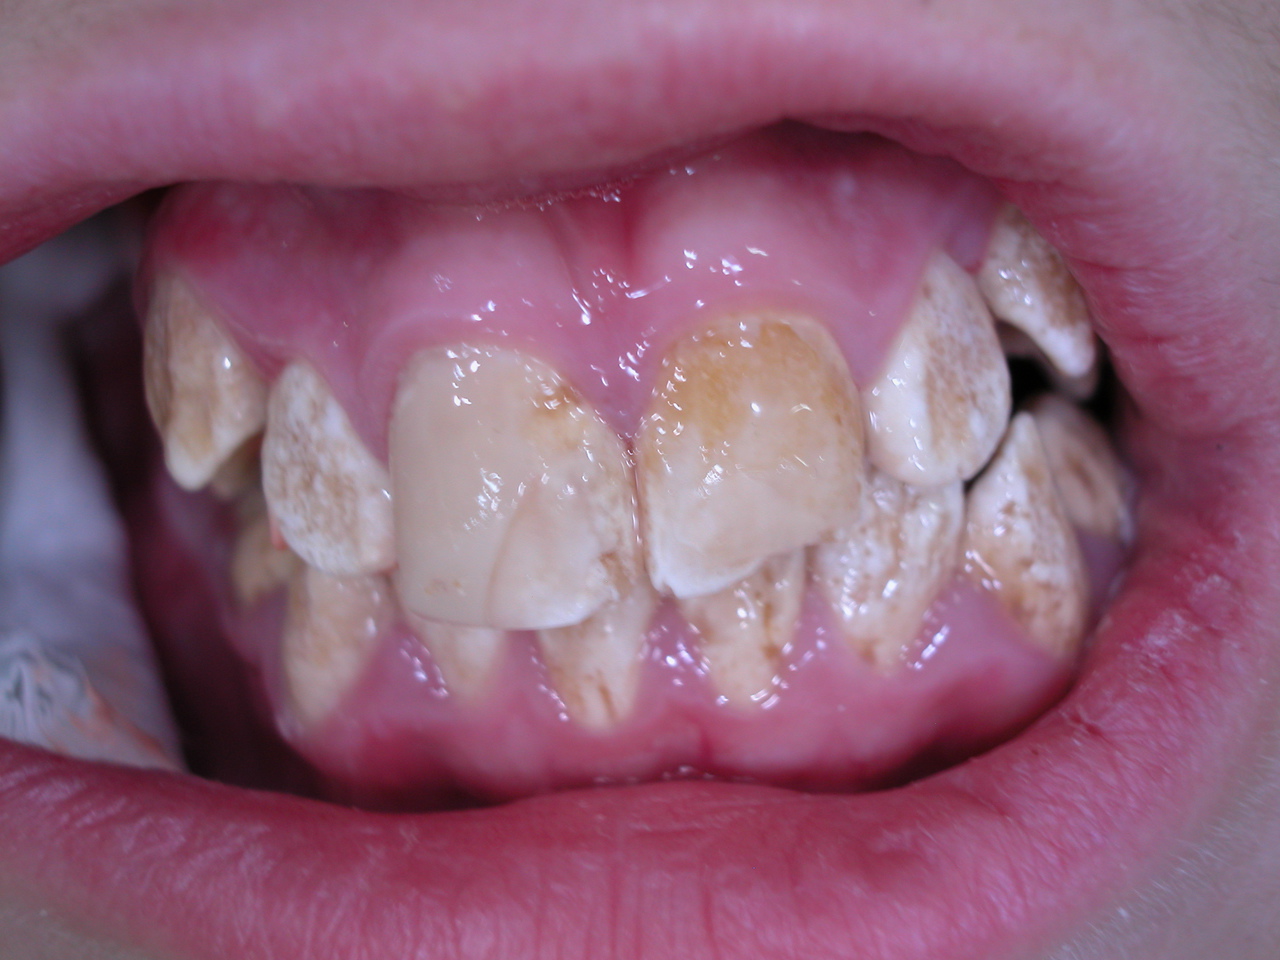 Рис. 1. Снимок полости рта пациента, страдающего amelogenesis imperfecta и демонстрирующего высокую кариозную активность.